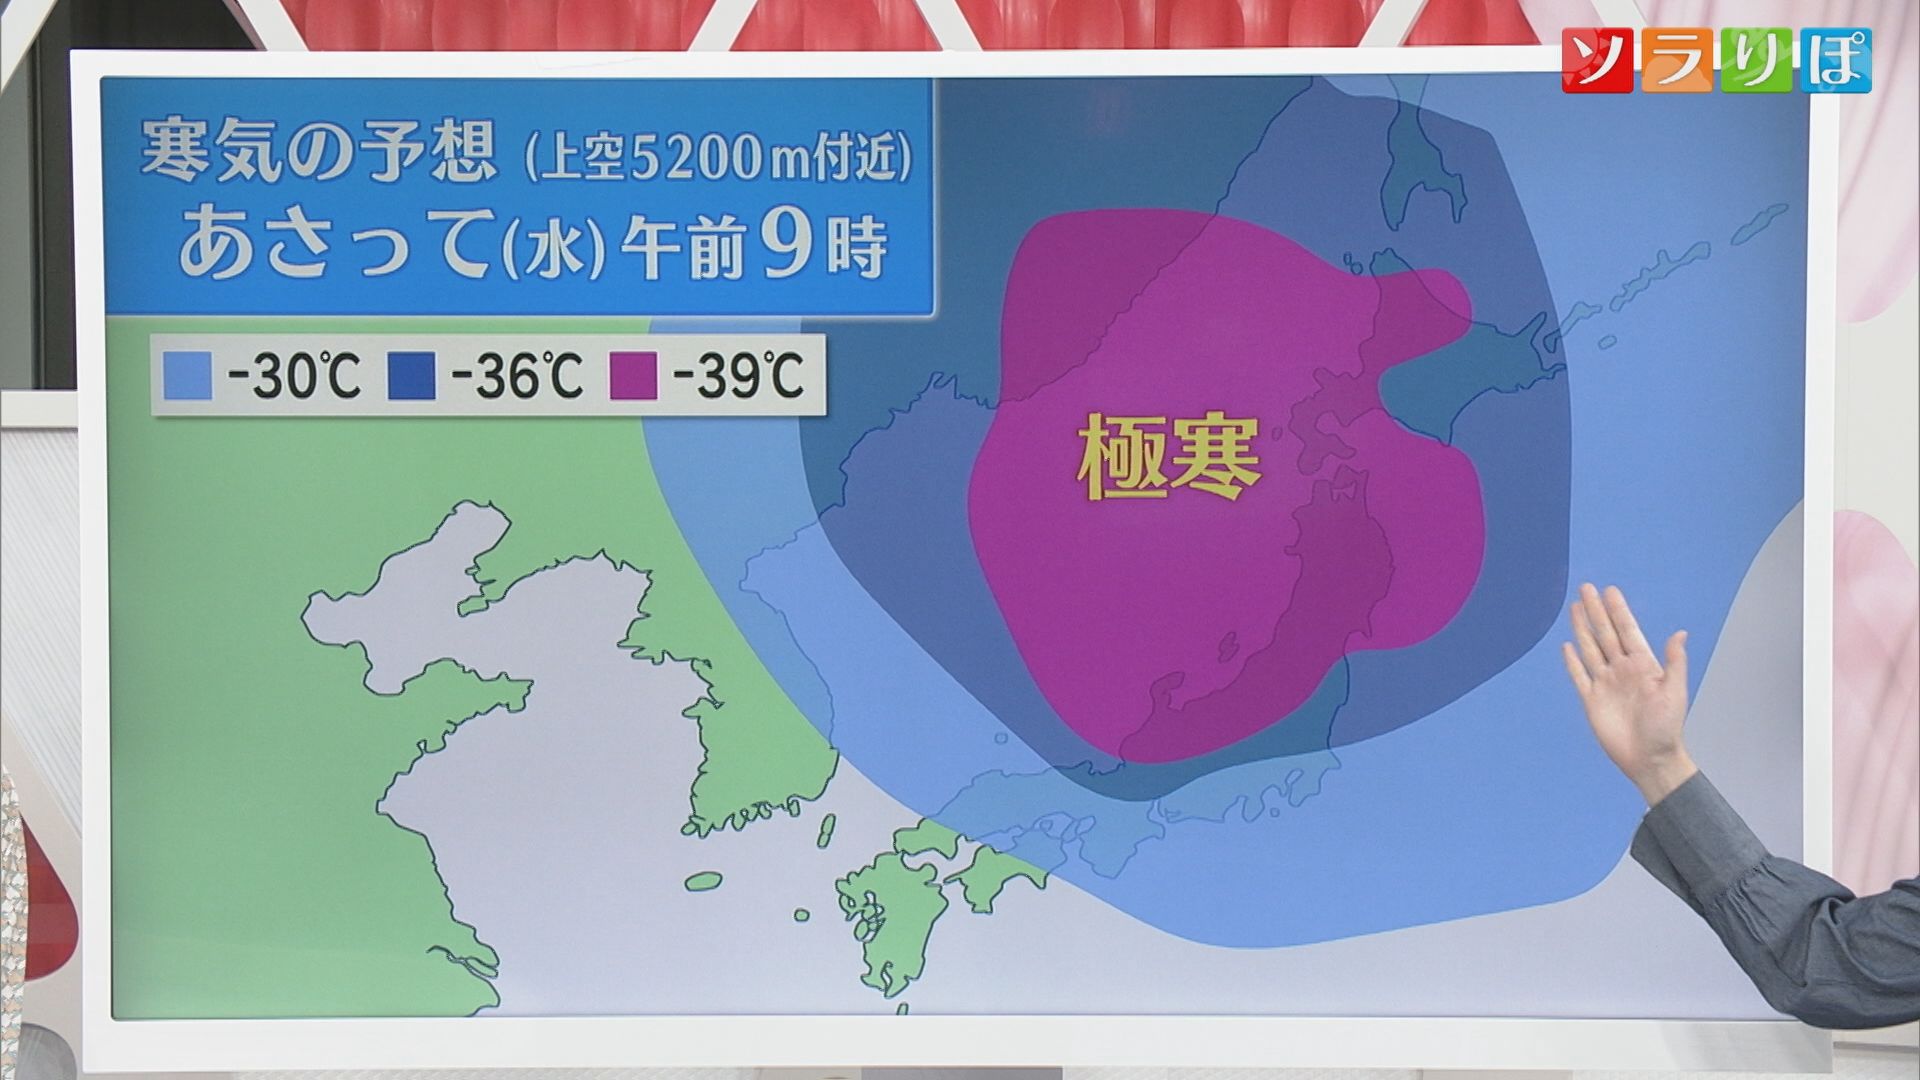 【気象予報士が解説】今季最強寒波か ピークは24日か 23日日中のうちに備えを【新潟】